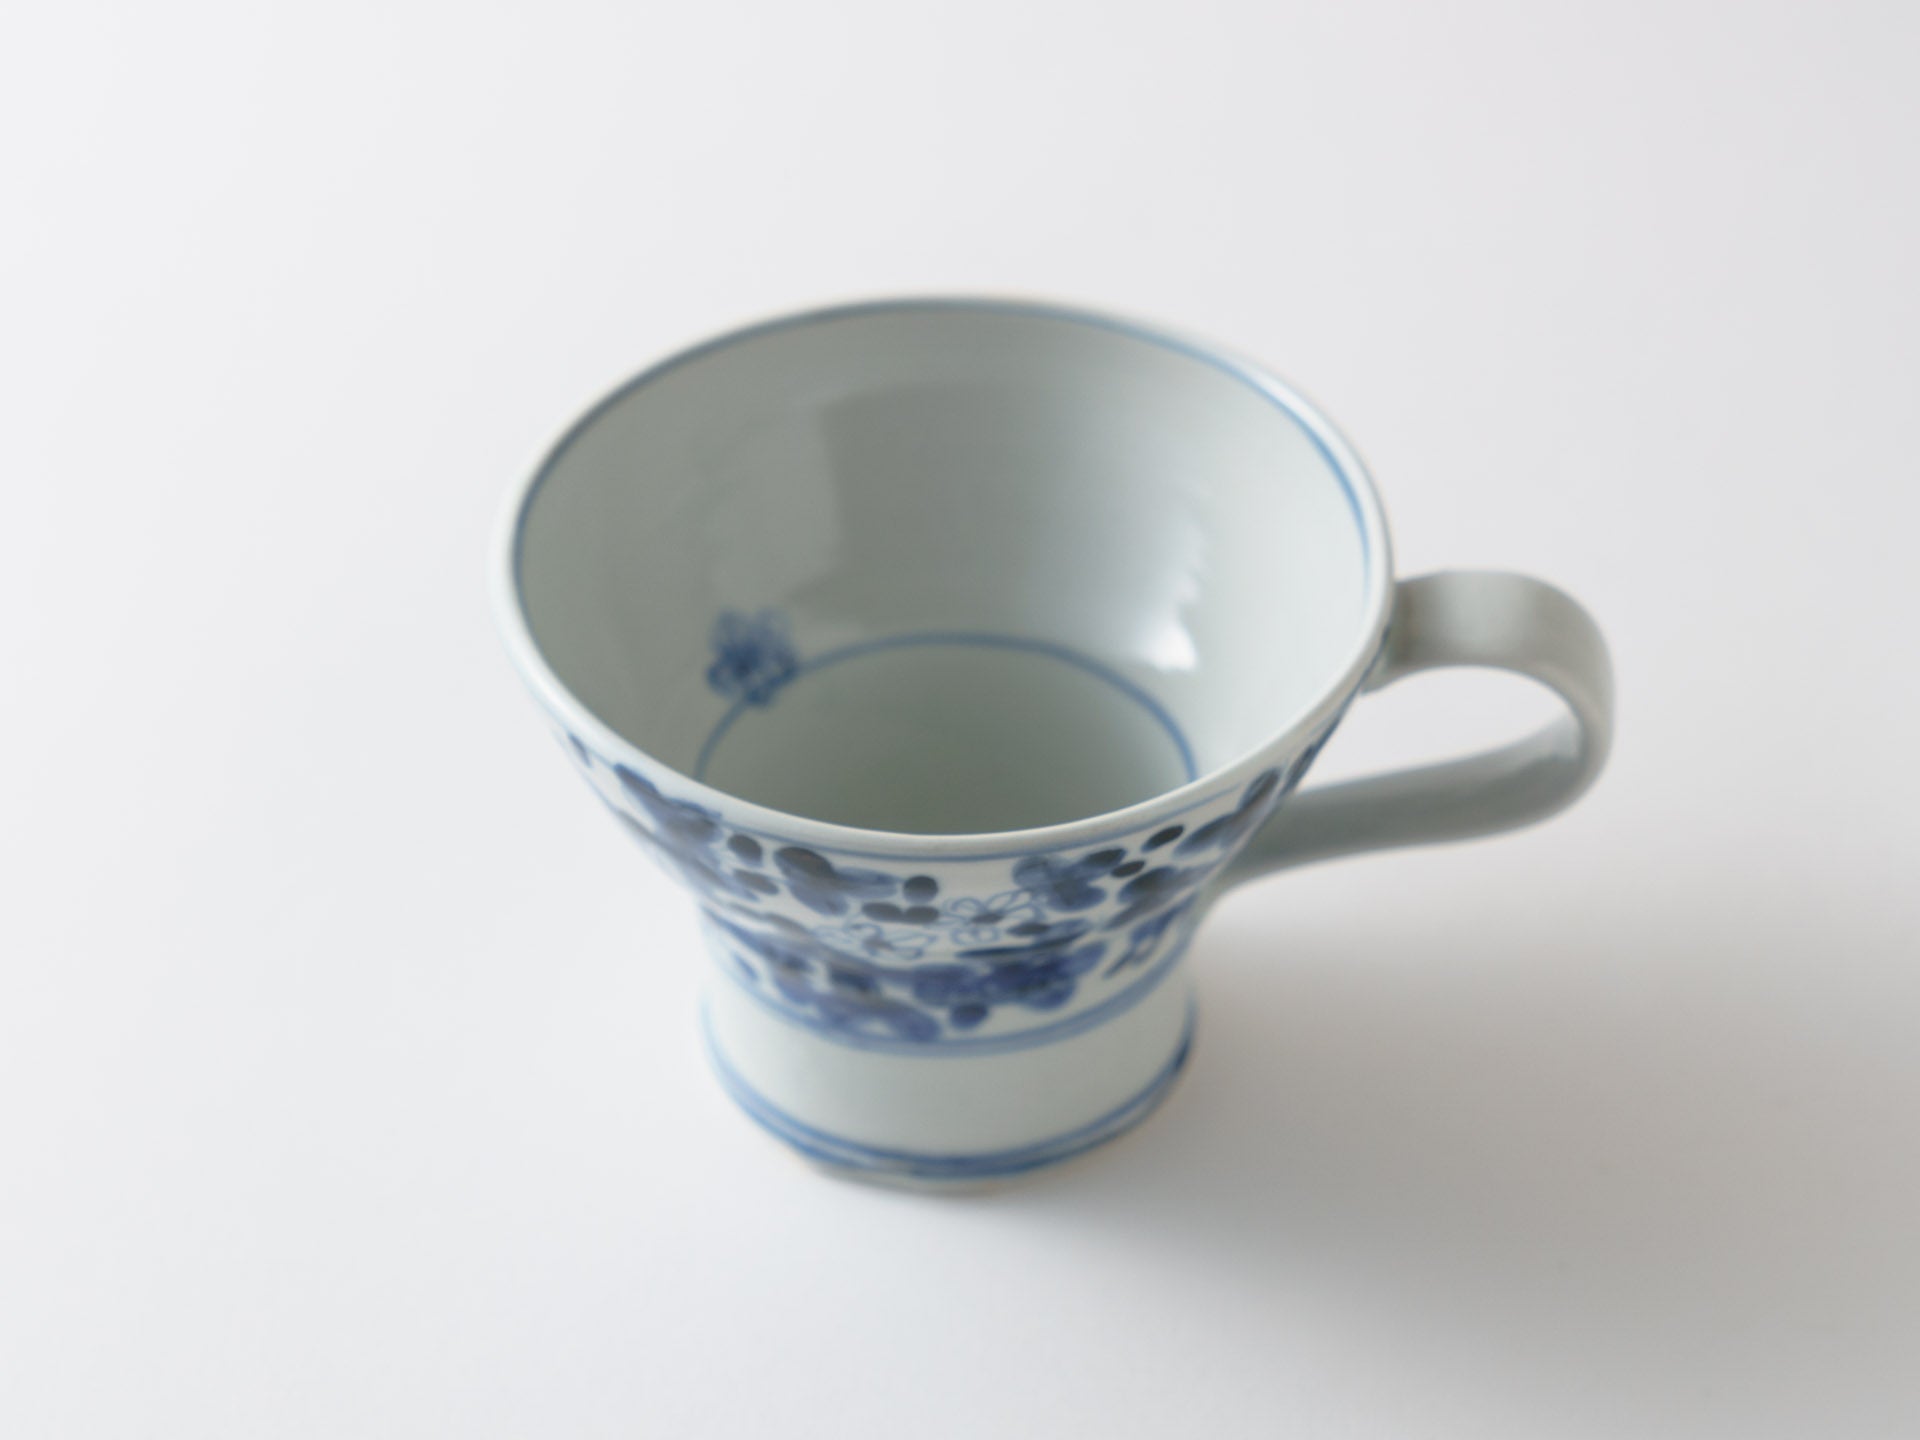 Tall mug with dyed flower pattern [Teiichiro Matsuo]